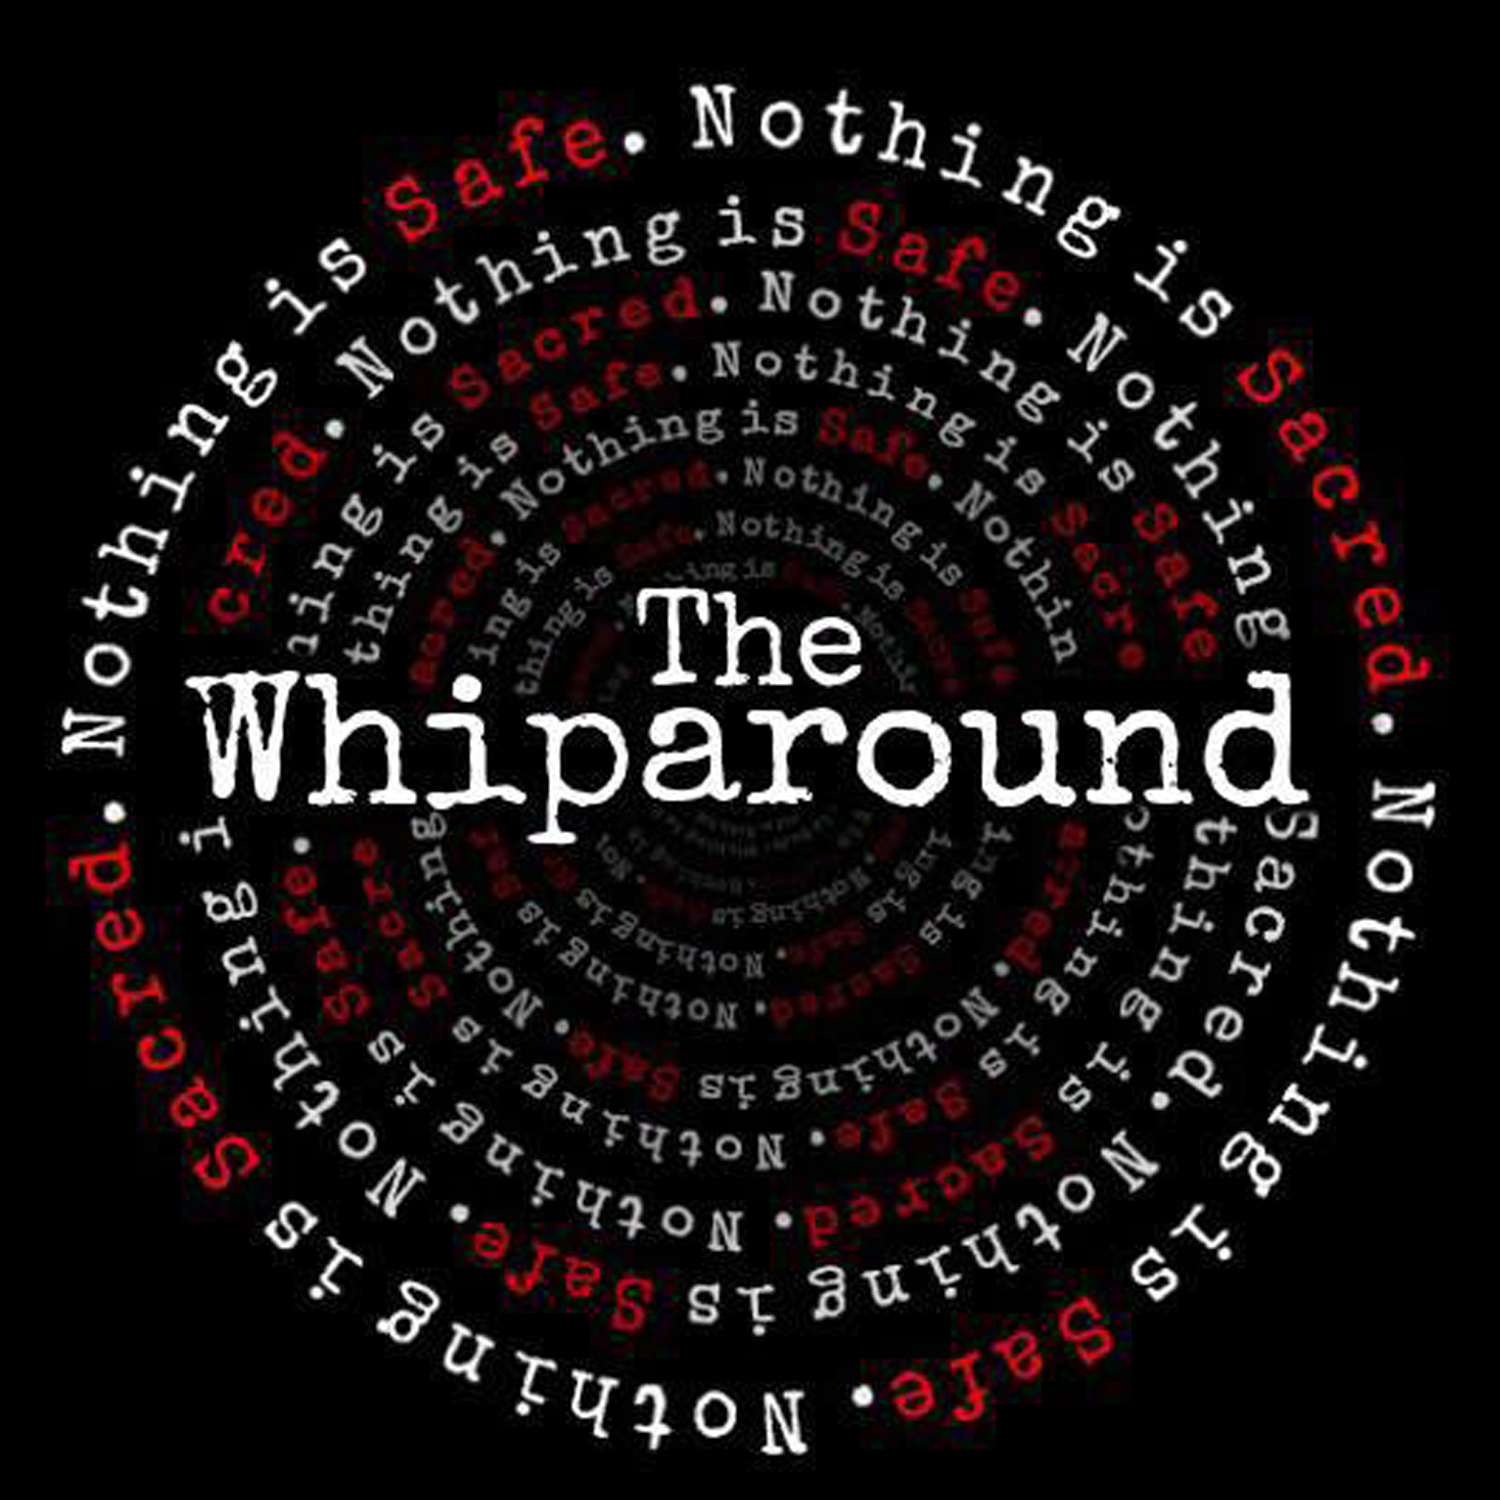 The Whiparound